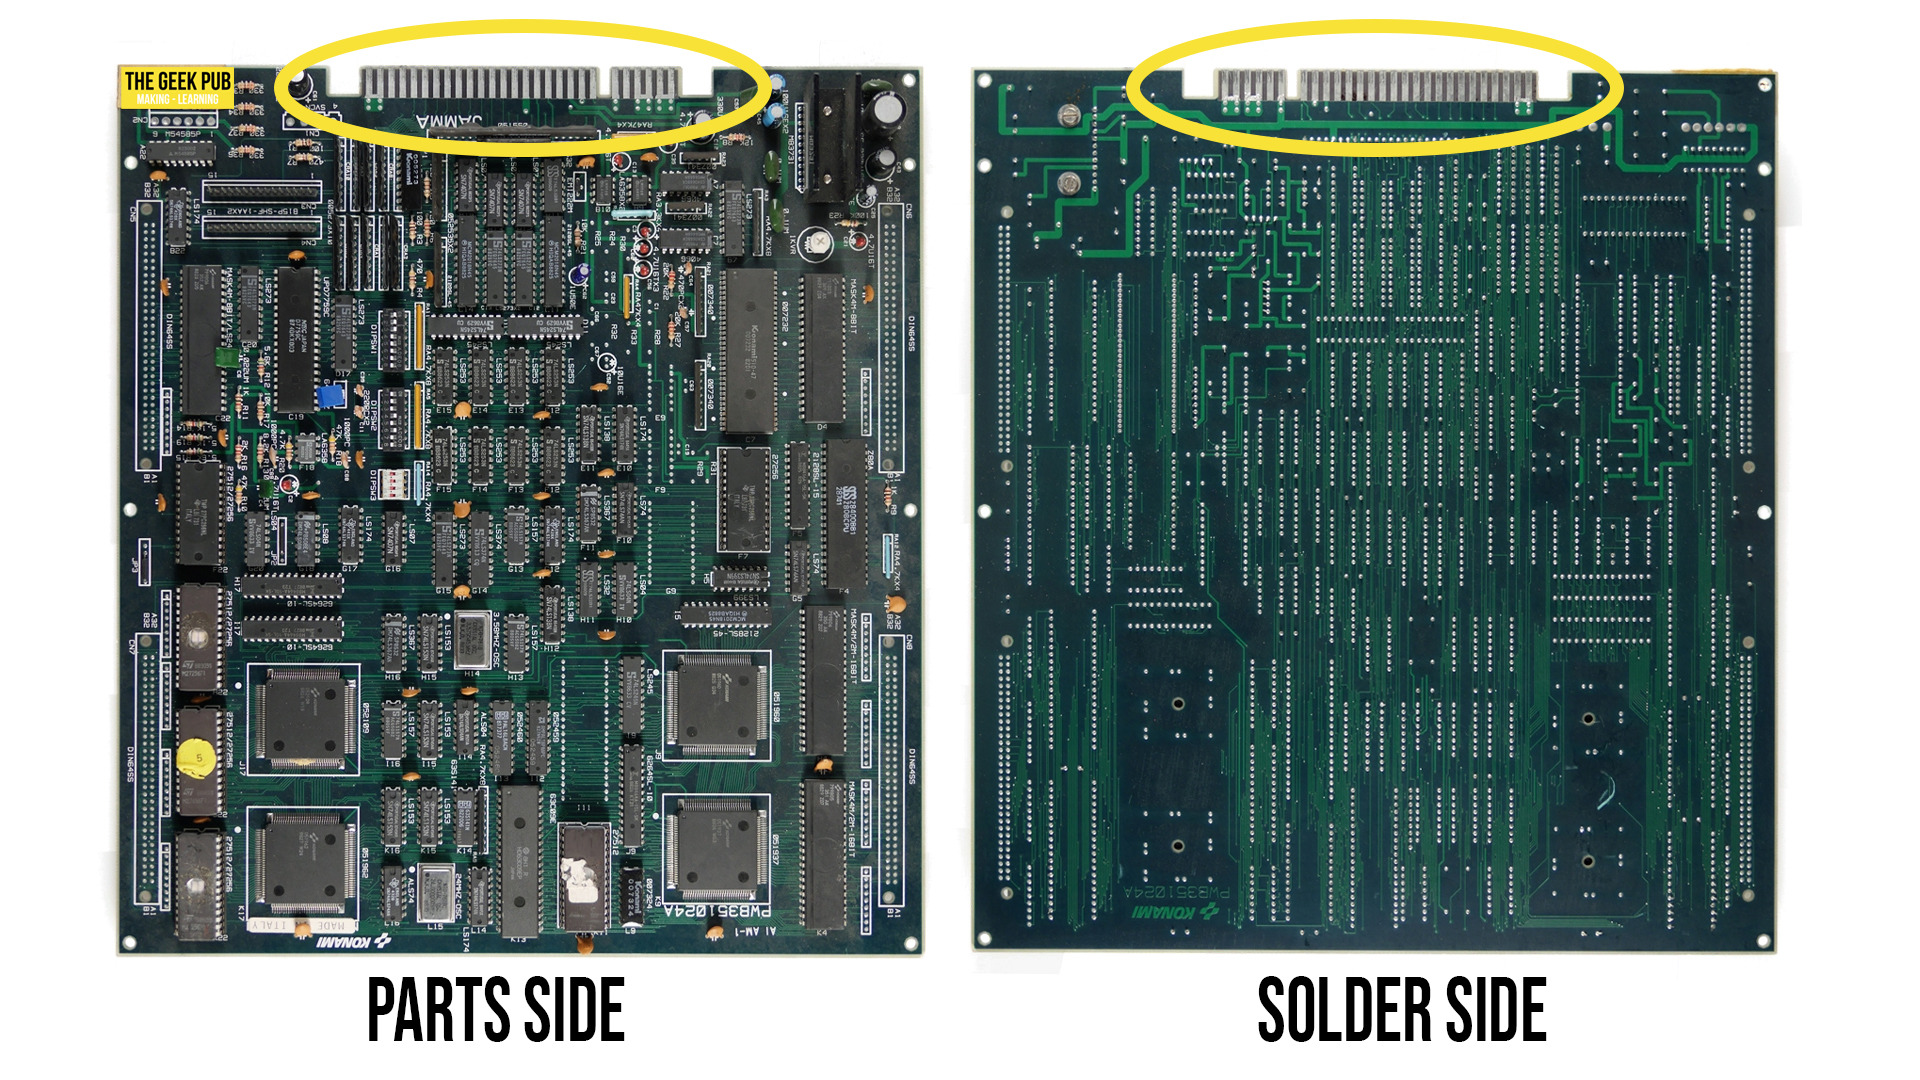 JAMMA PCB: Solder side vs Parts side